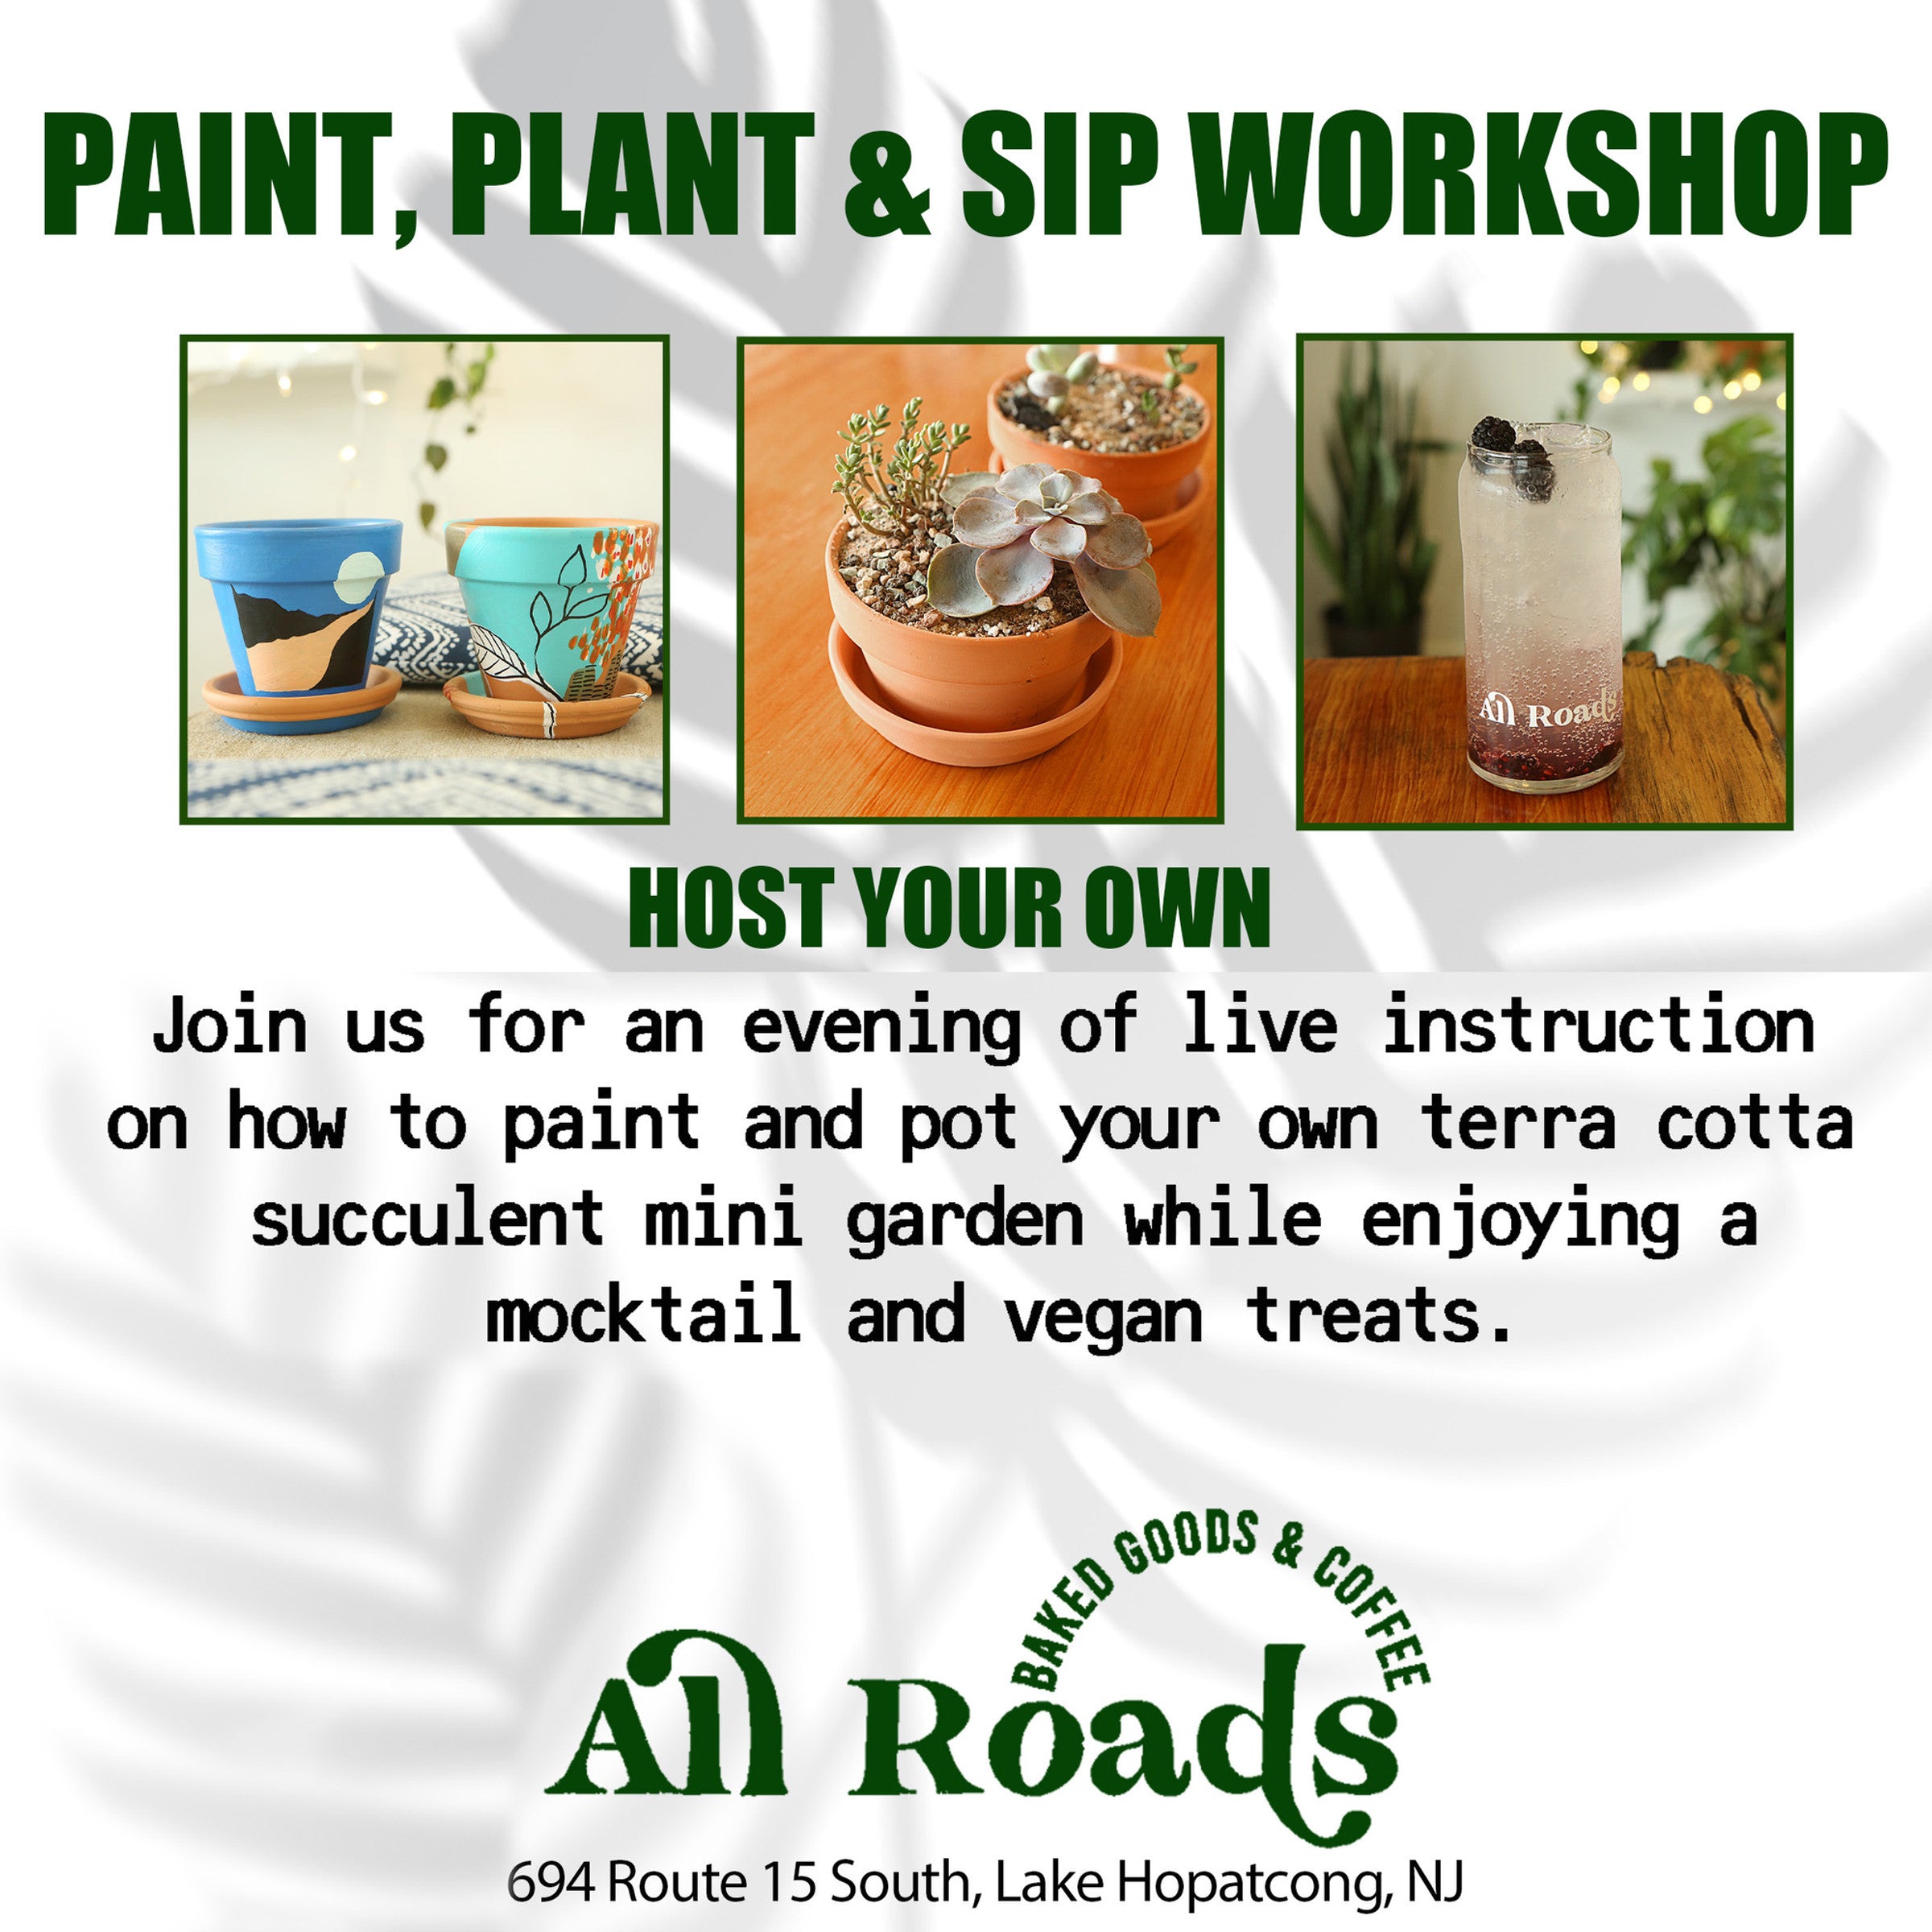 Host Your Own Paint, Plant & Sip Workshop